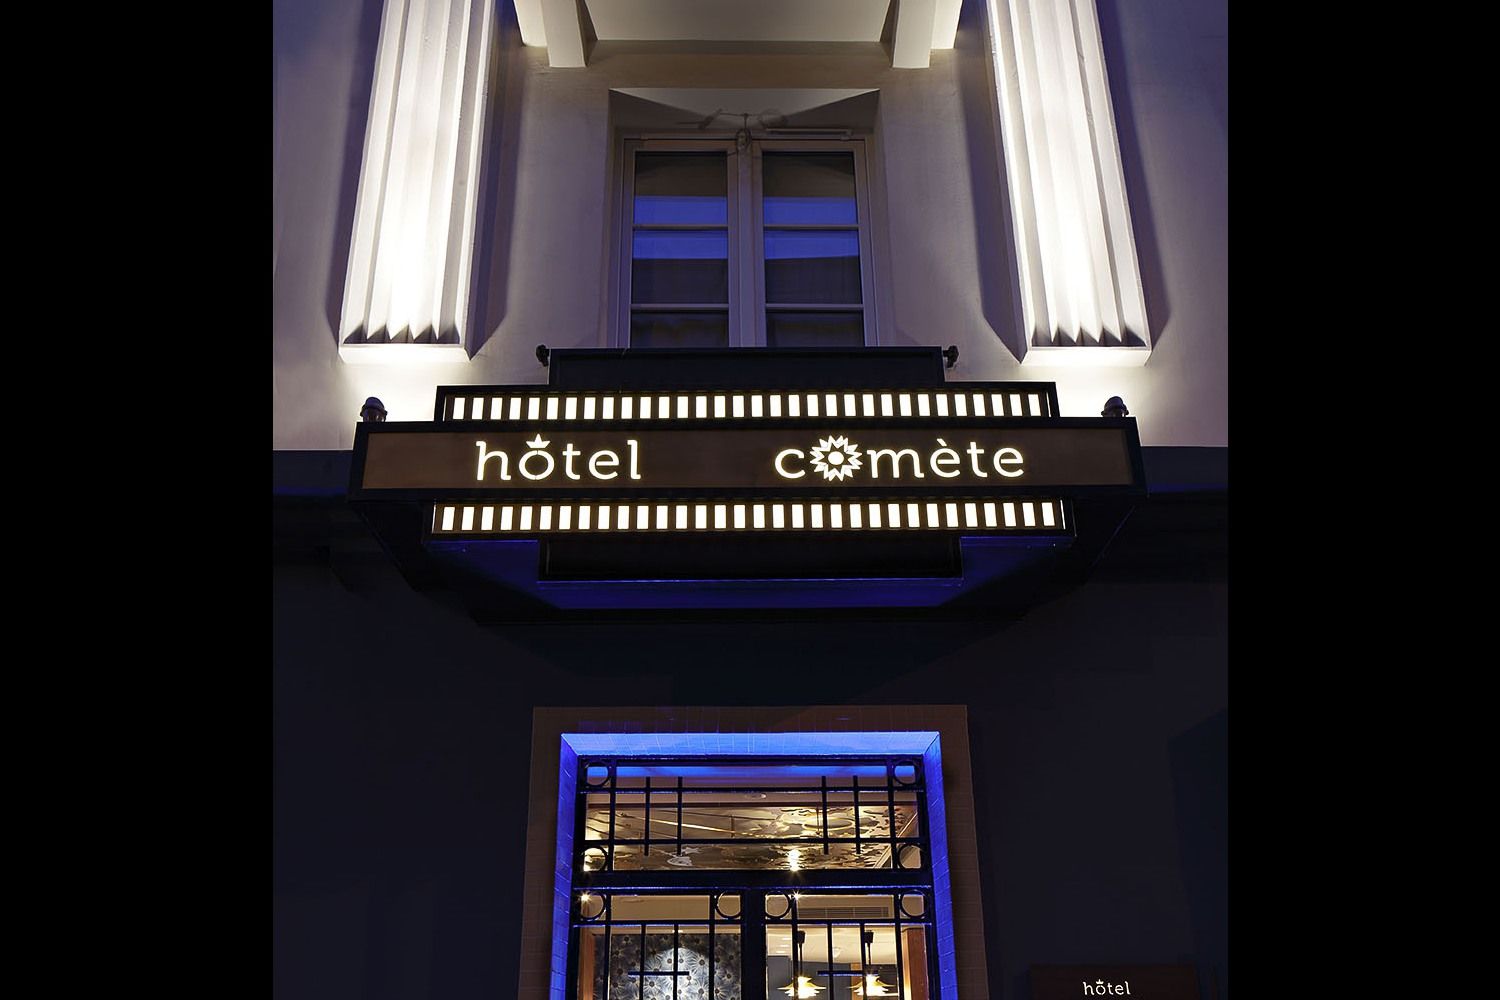 Hotel Piapia Paříž Exteriér fotografie